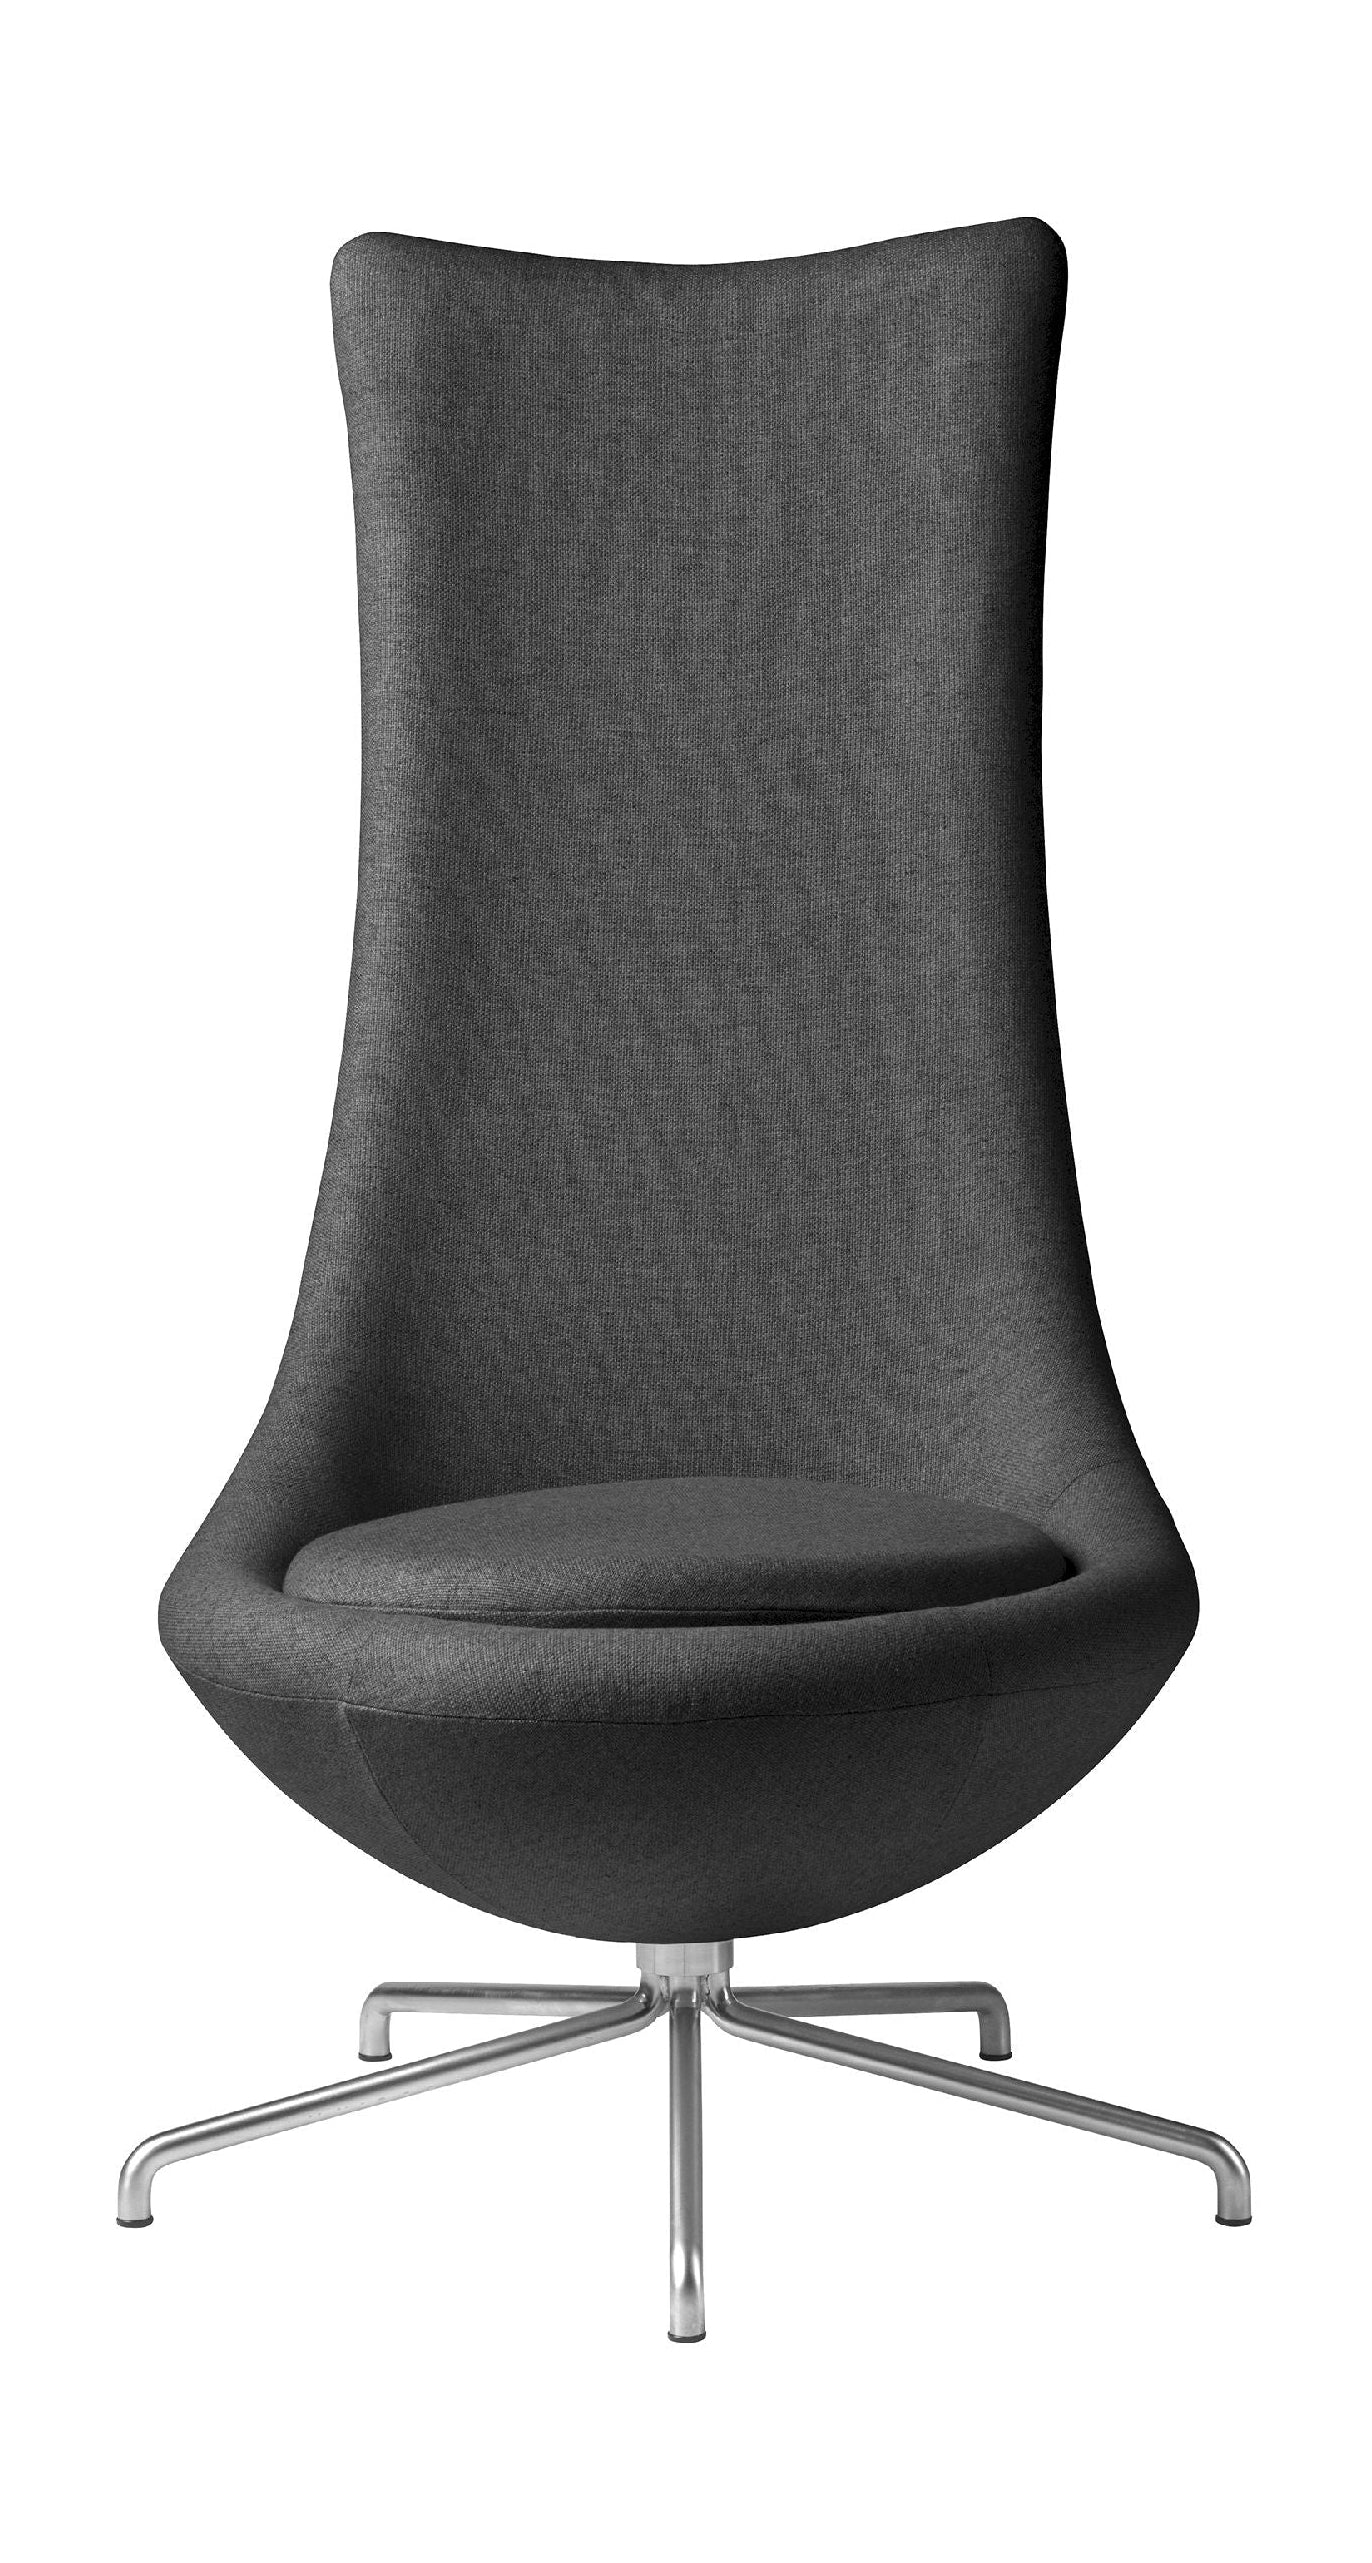 FDB Møbler L41 Bellamie Lounge -stol med svängbar ram, mörkgrå/metall